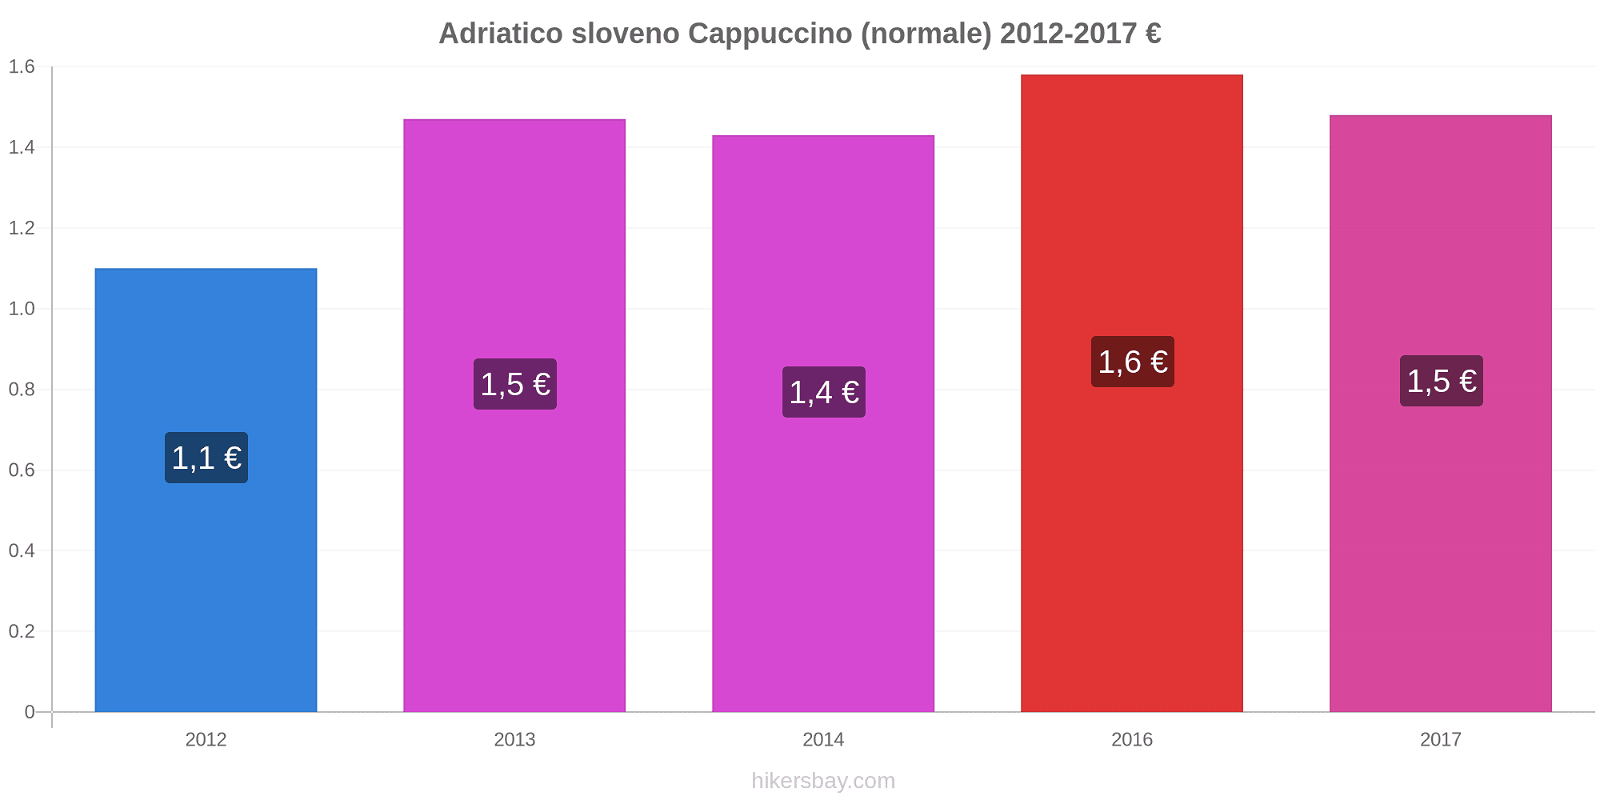 Adriatico sloveno variazioni di prezzo Cappuccino (normale) hikersbay.com